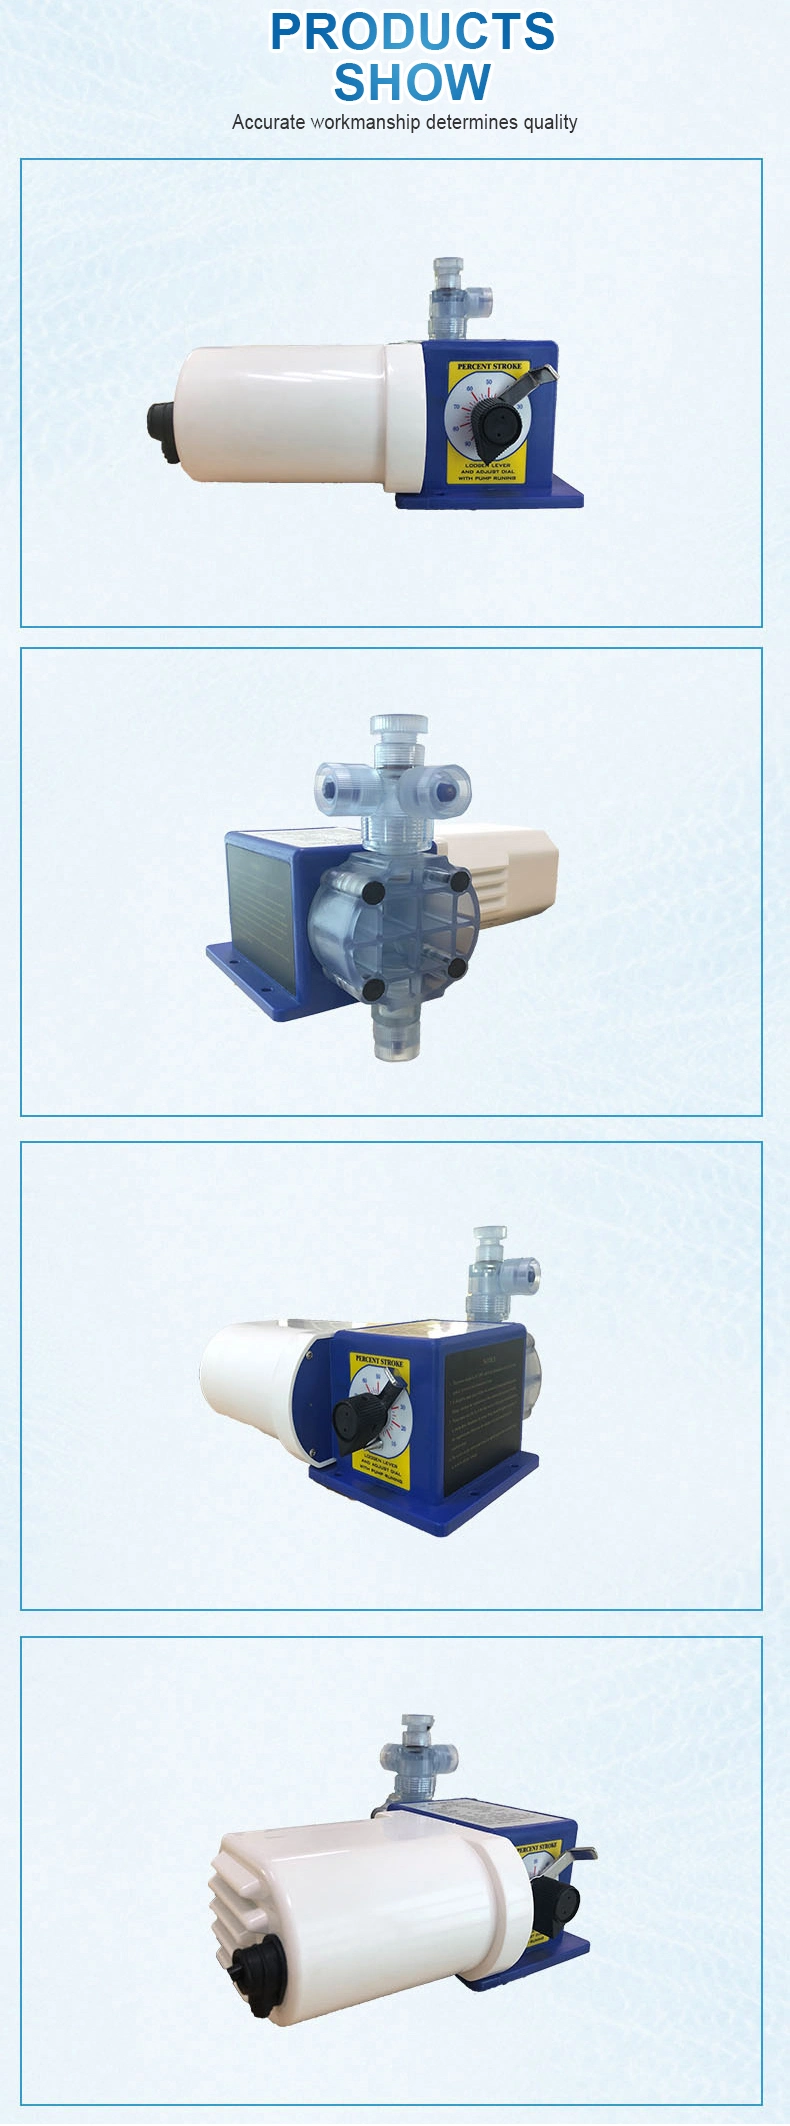 Ailipu Jm Series Manual Adjustment Diaphragm Dosing Pump for Chemical, Oil, Water